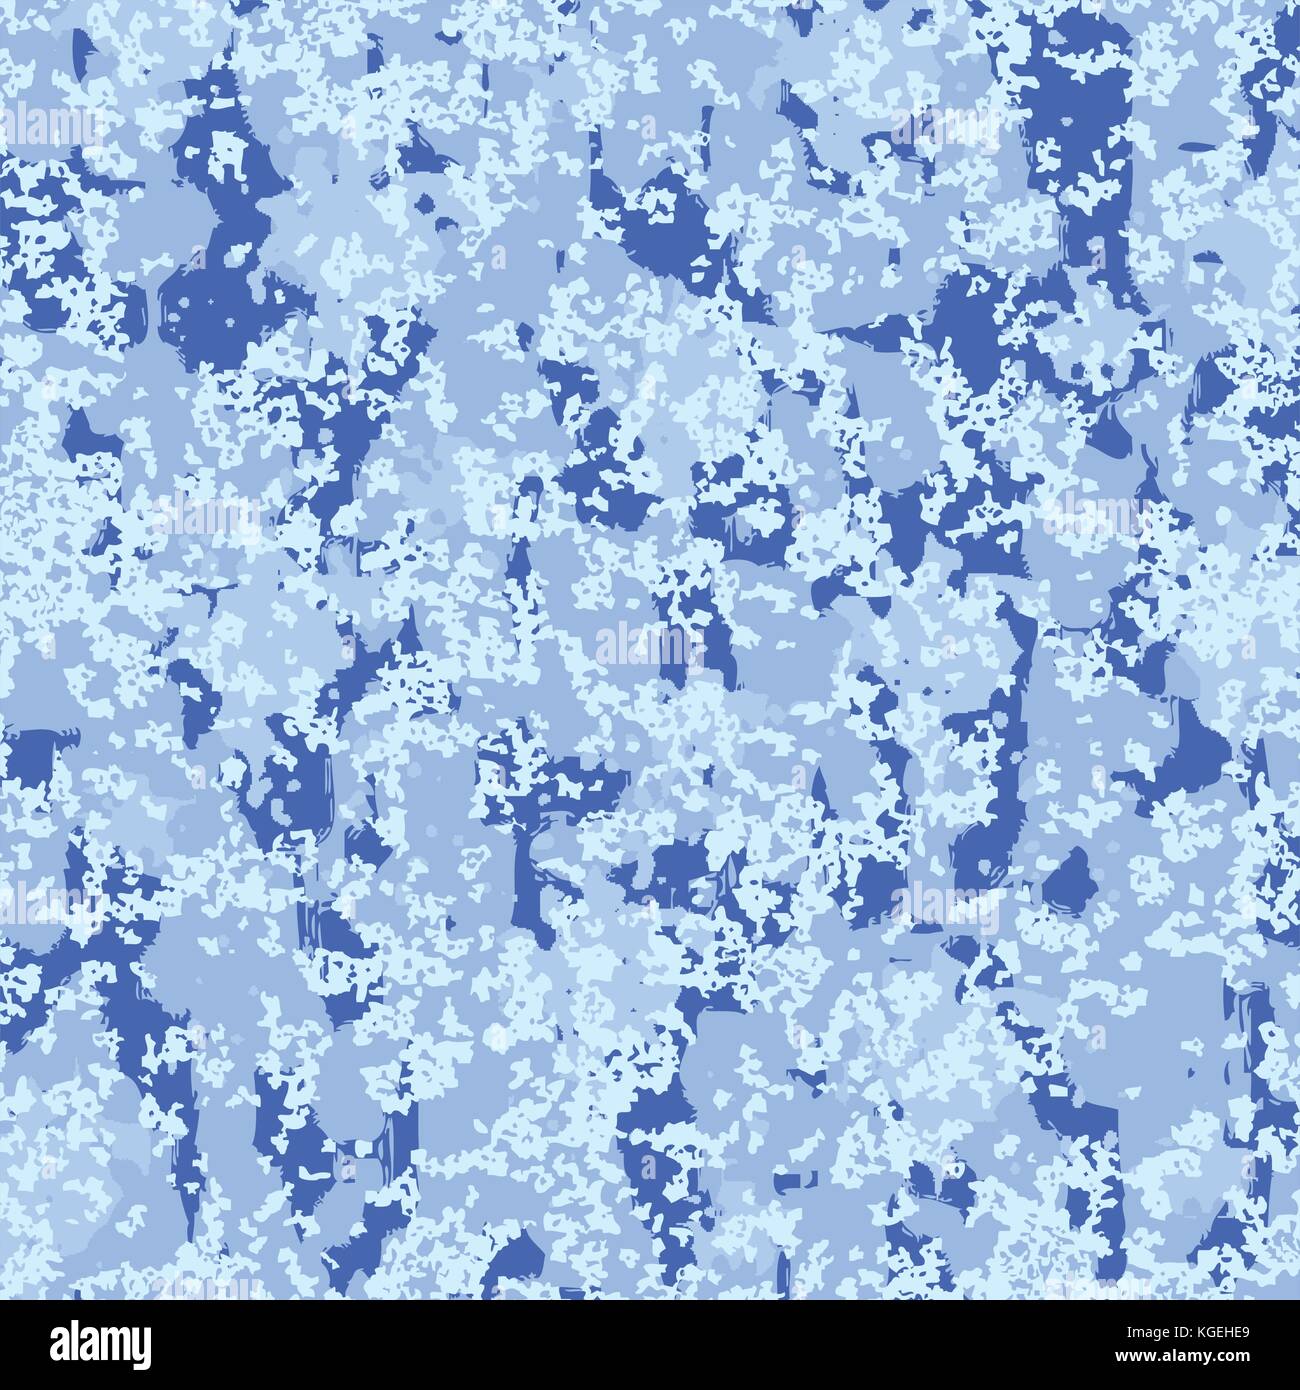 Hiver gel vector background. vitre gelée. cristaux de glace la texture. Vacances de noël illustration Illustration de Vecteur